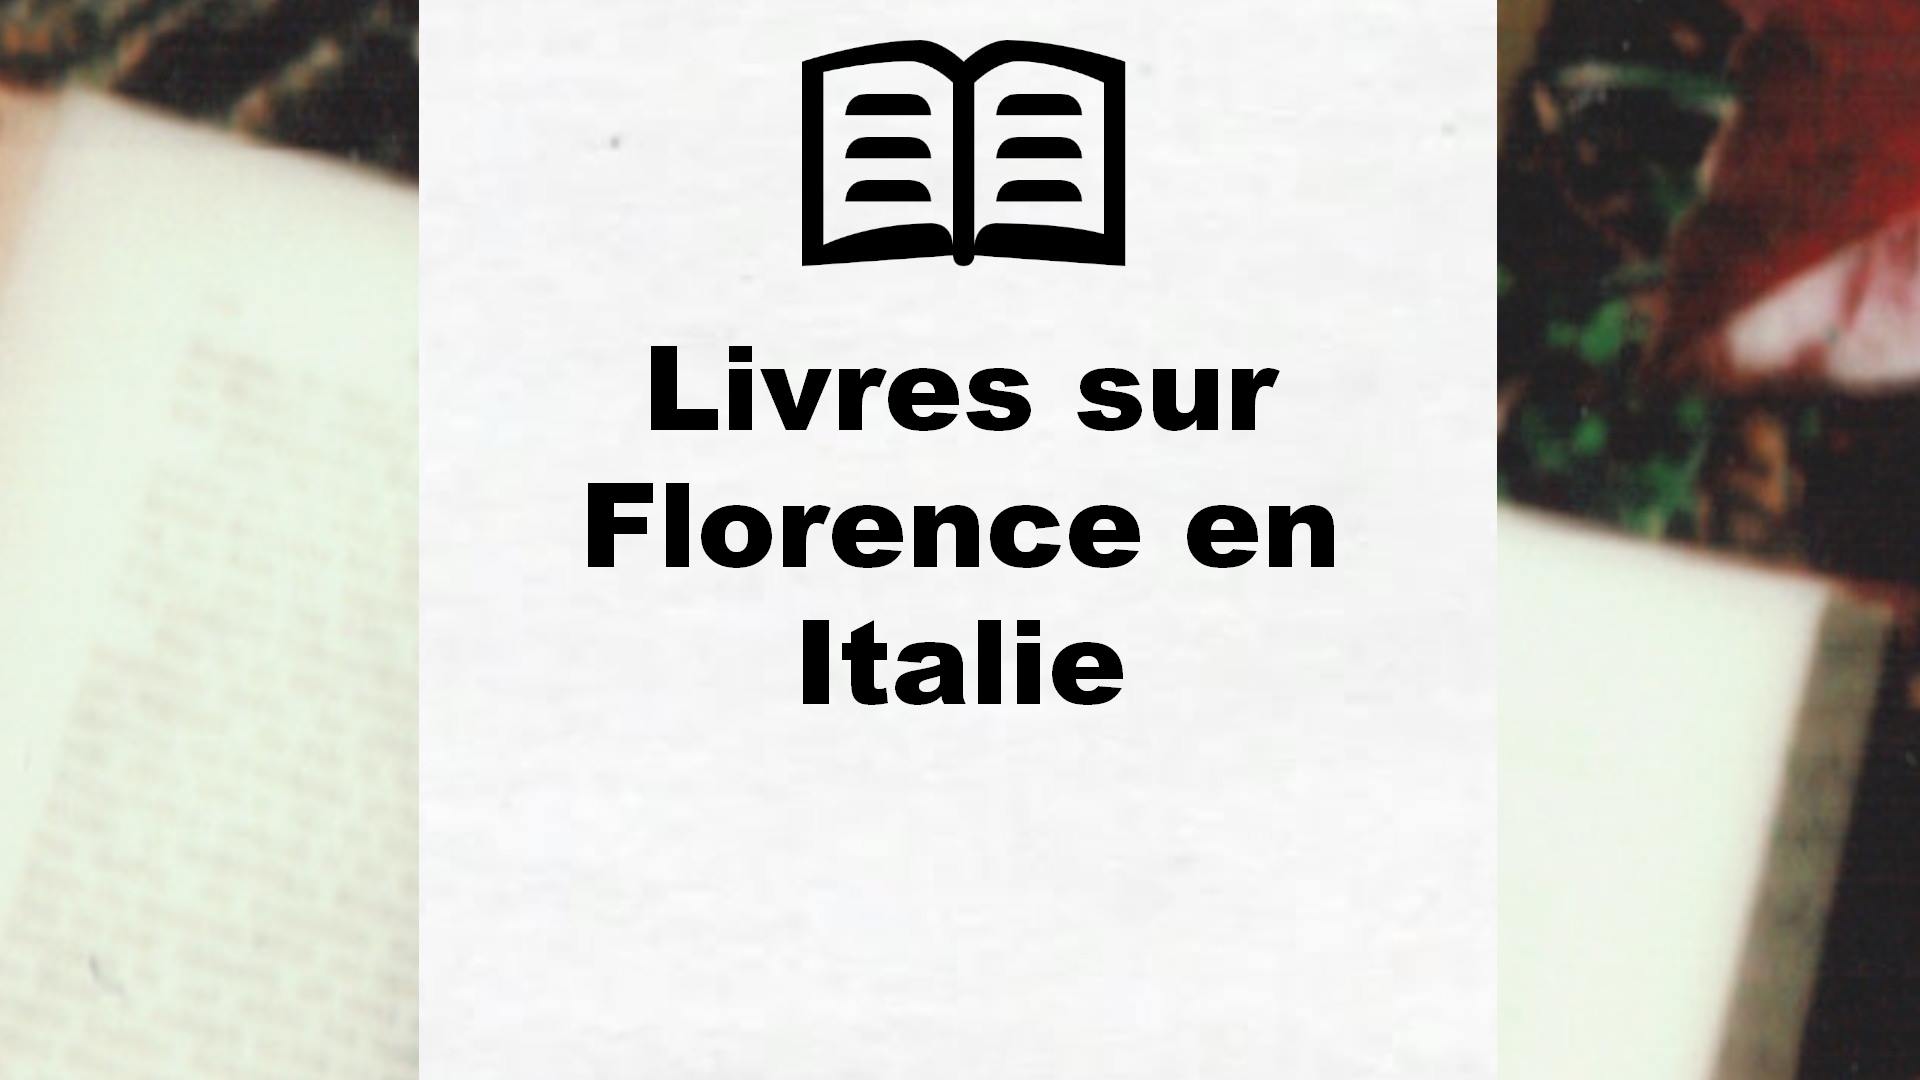 Livres sur Florence en Italie